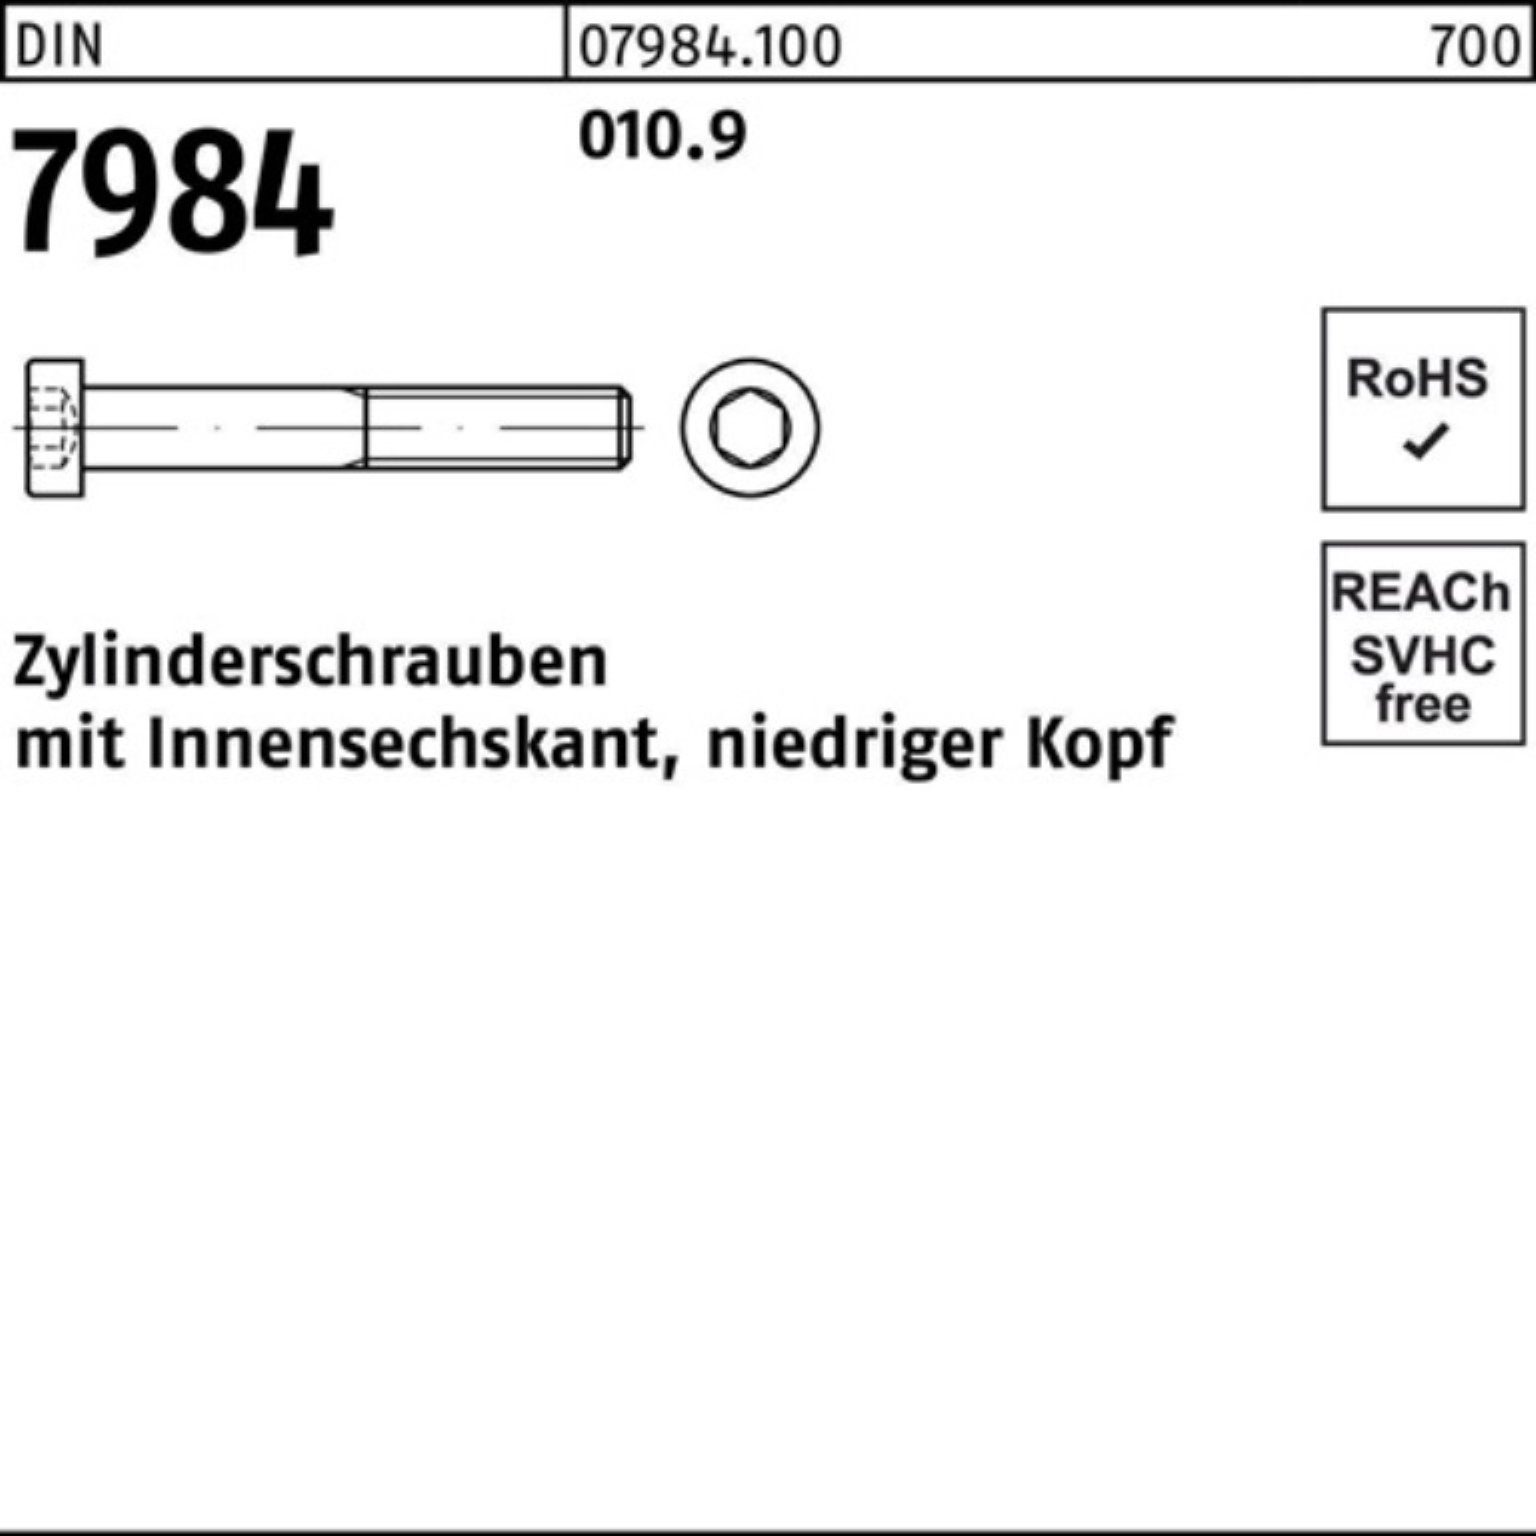 7984 Zylinderschraube Zylinderschraube 200er Stüc Innen-6kt Reyher M10x 010.9 DIN Pack 30 200